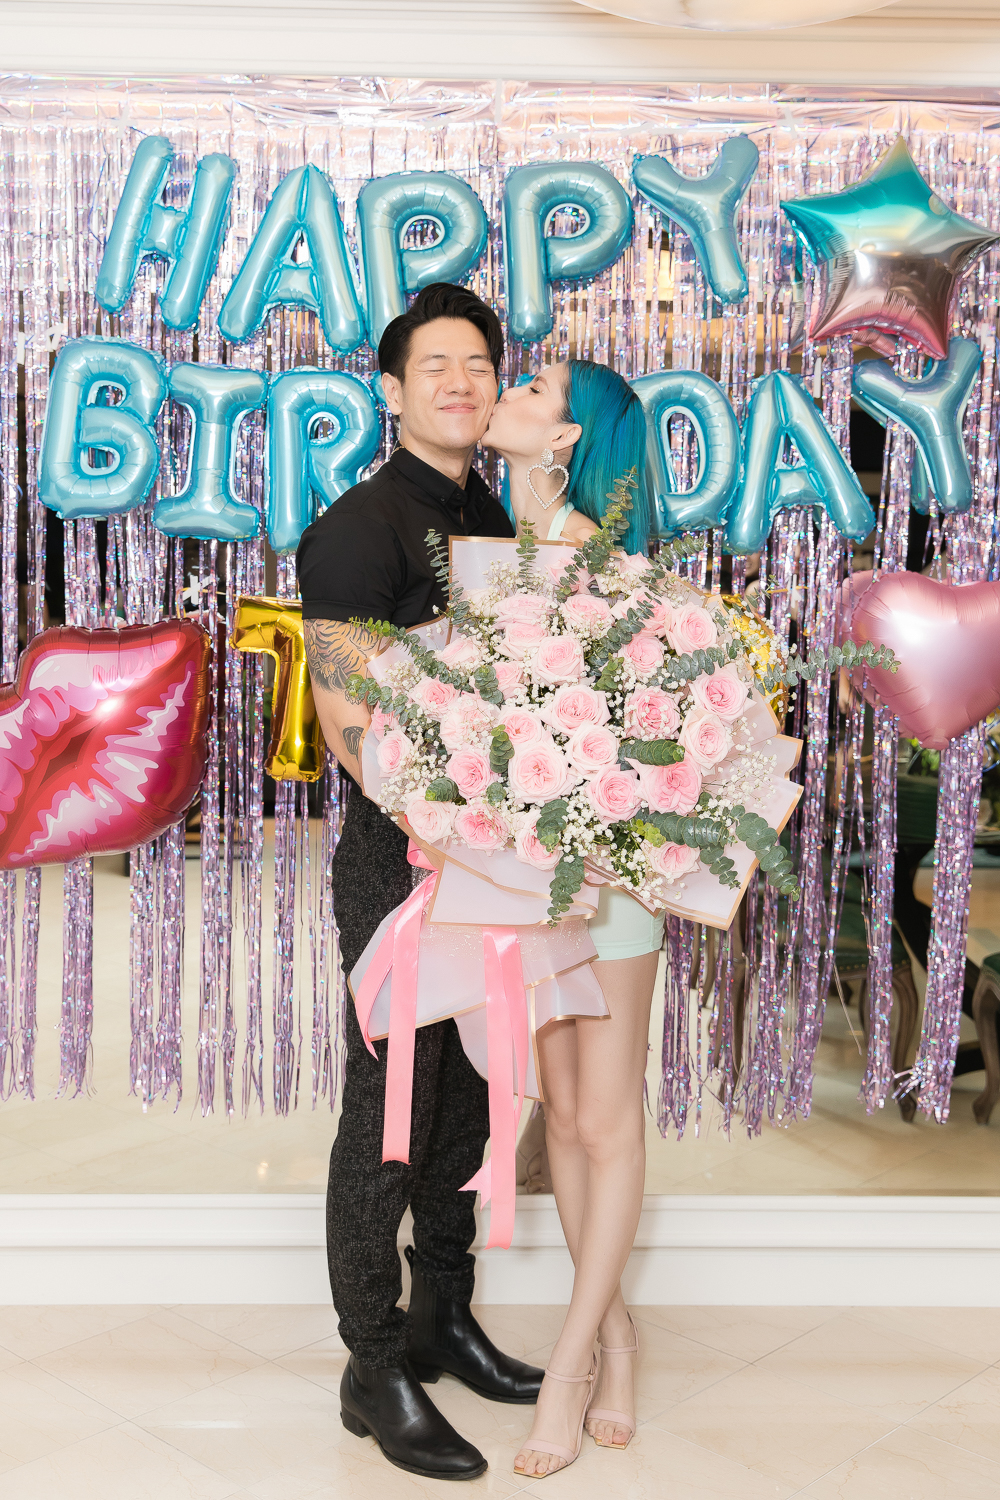 TyhD – Thùy Dương và Michael Trương hiện đang là một trong những cặp đôi đẹp của showbiz Việt